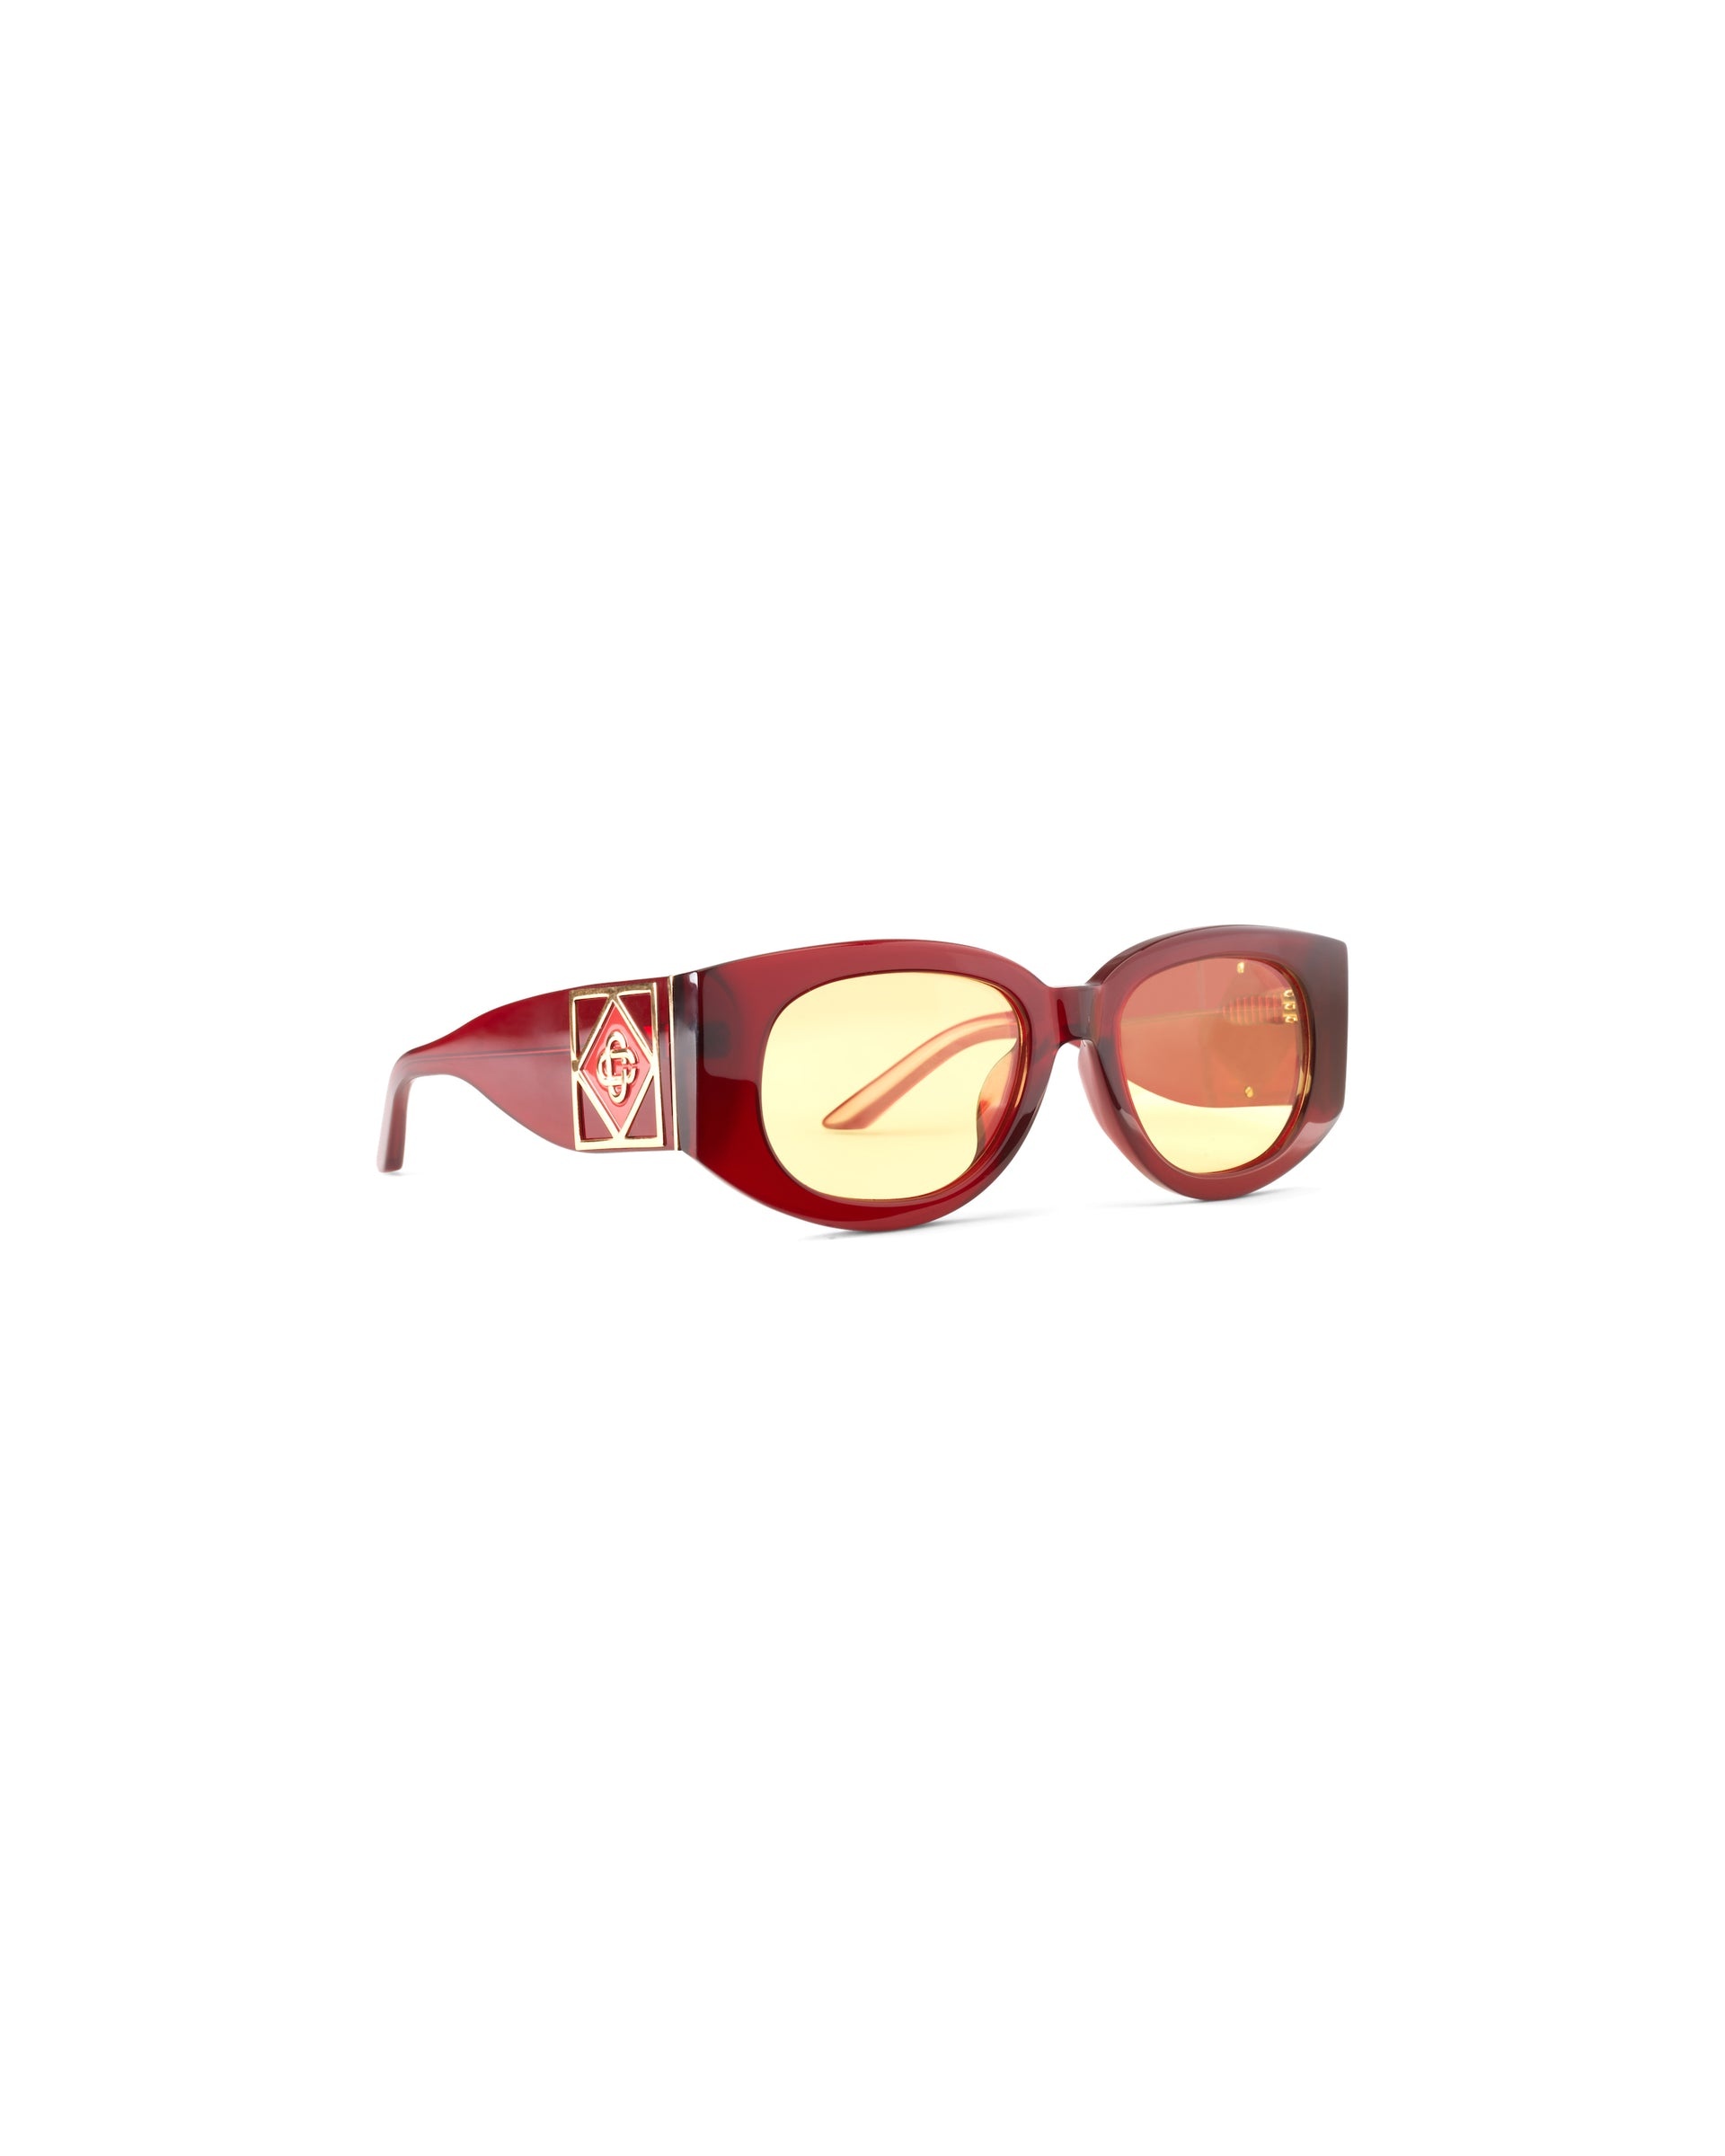 Gabrielle Wine & Gold Sunglasses - 1